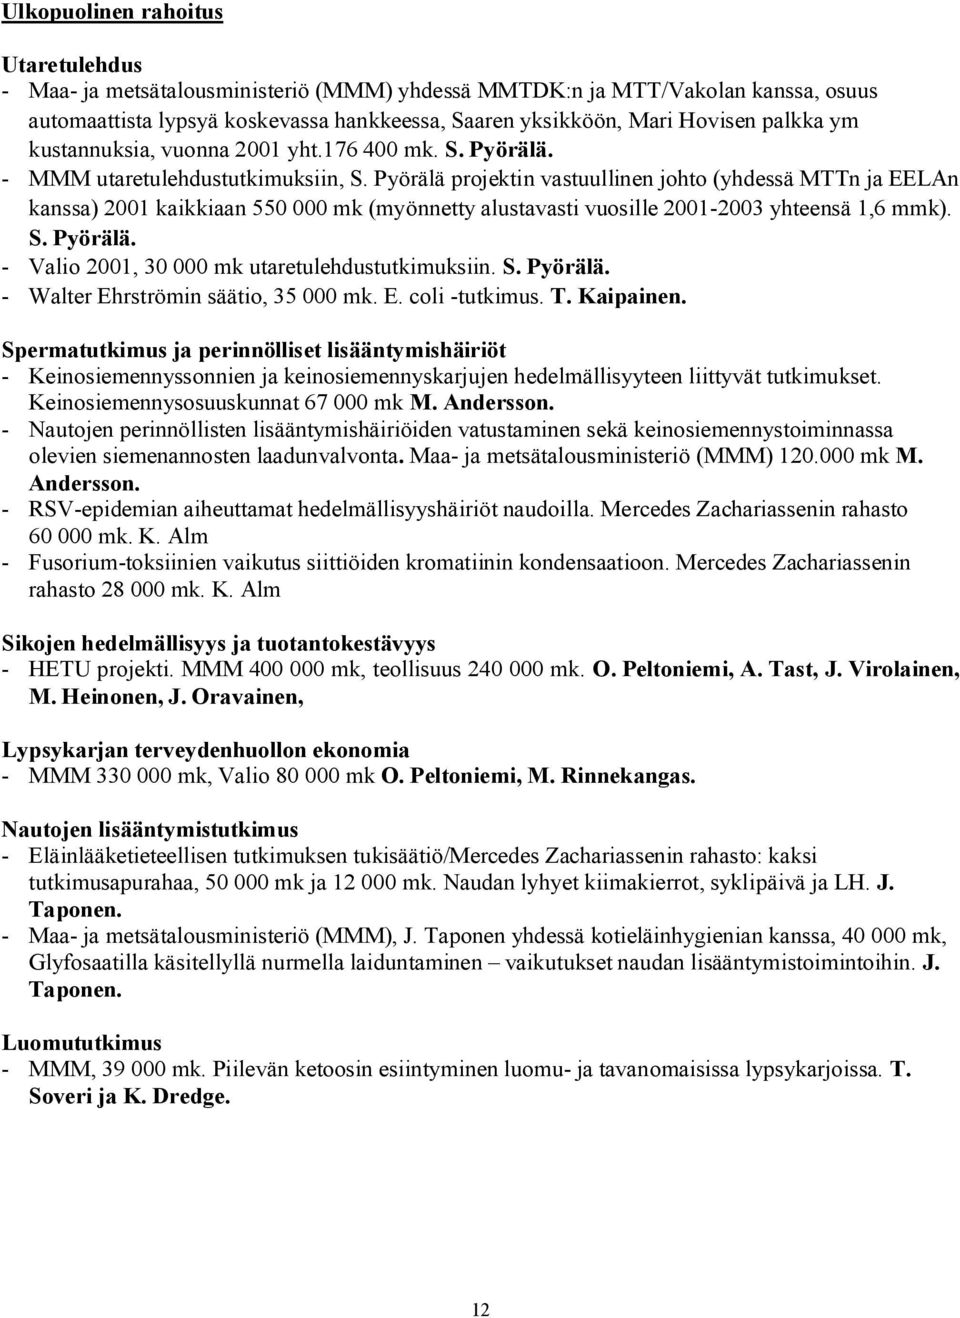 Pyörälä projektin vastuullinen johto (yhdessä MTTn ja EELAn kanssa) 2001 kaikkiaan 550 000 mk (myönnetty alustavasti vuosille 2001-2003 yhteensä 1,6 mmk). S. Pyörälä.